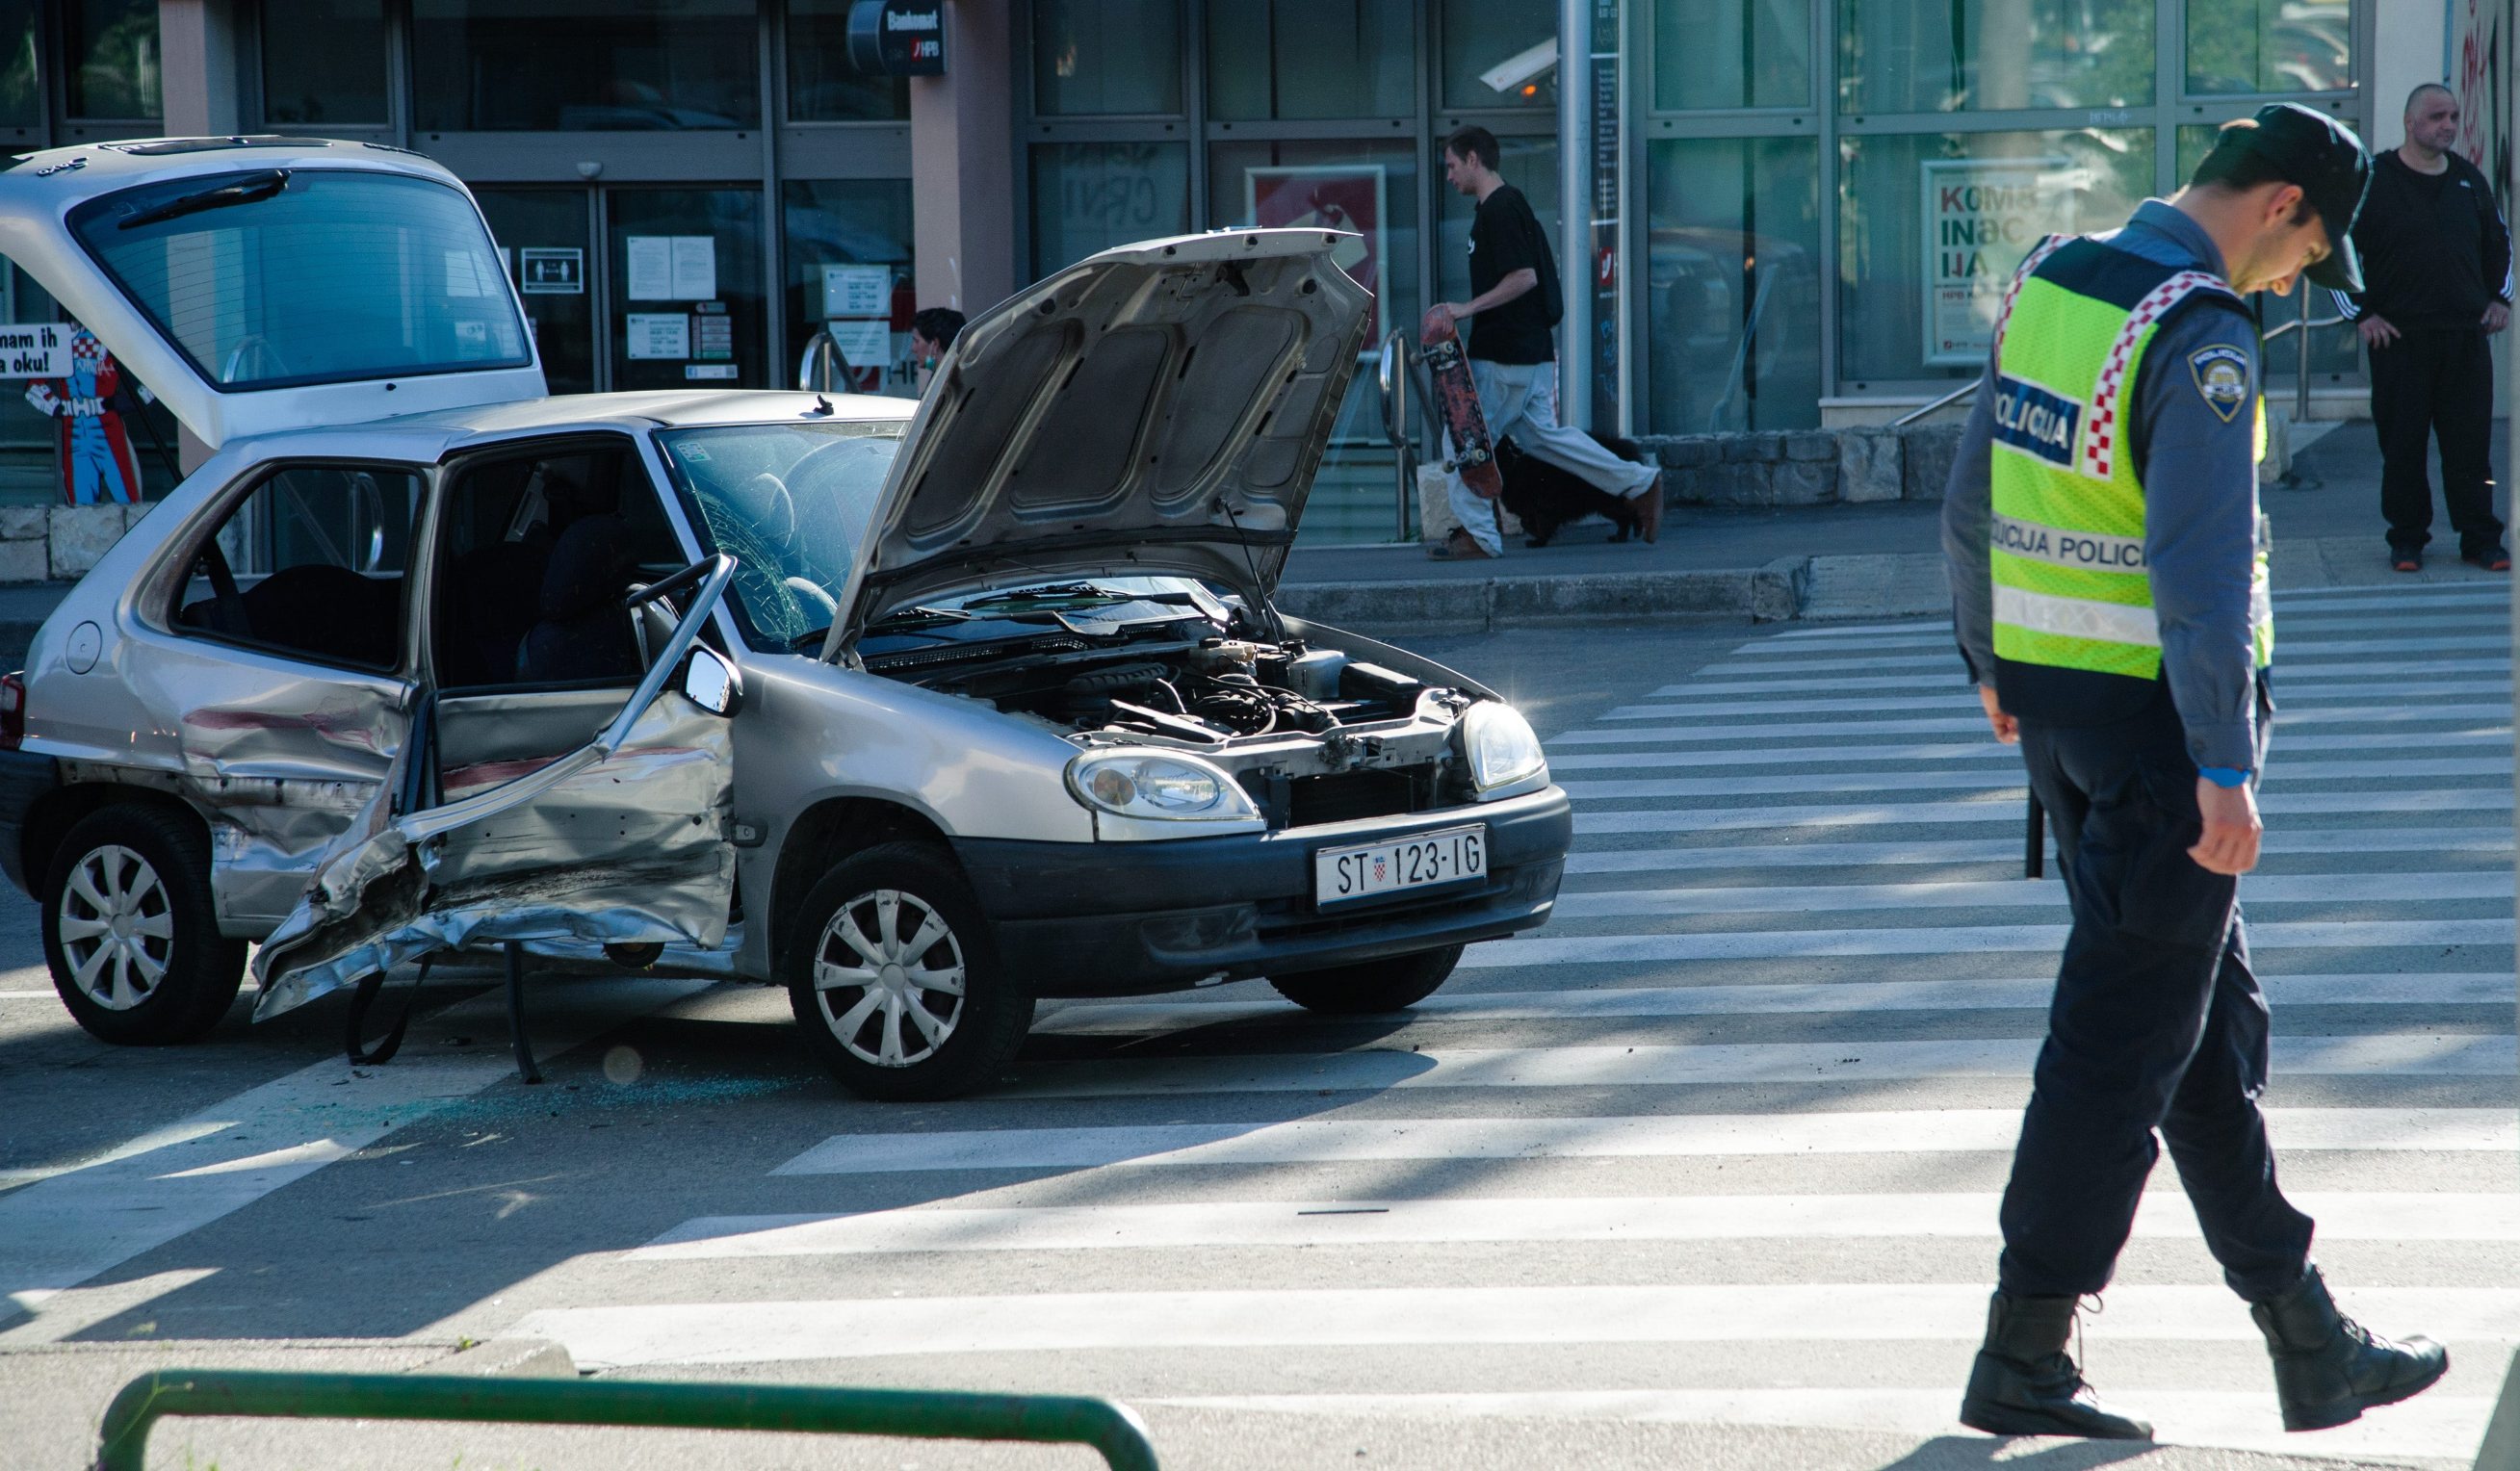 Split, 040520
Prometna nesreca u kojoj su sudjelovala 2 osobna vozila na raskrizju Vukovarske i Dubrovacke ulice dogodila se nesto prije 17 sati. 
Foto: Tom Dubravec / CROPIX